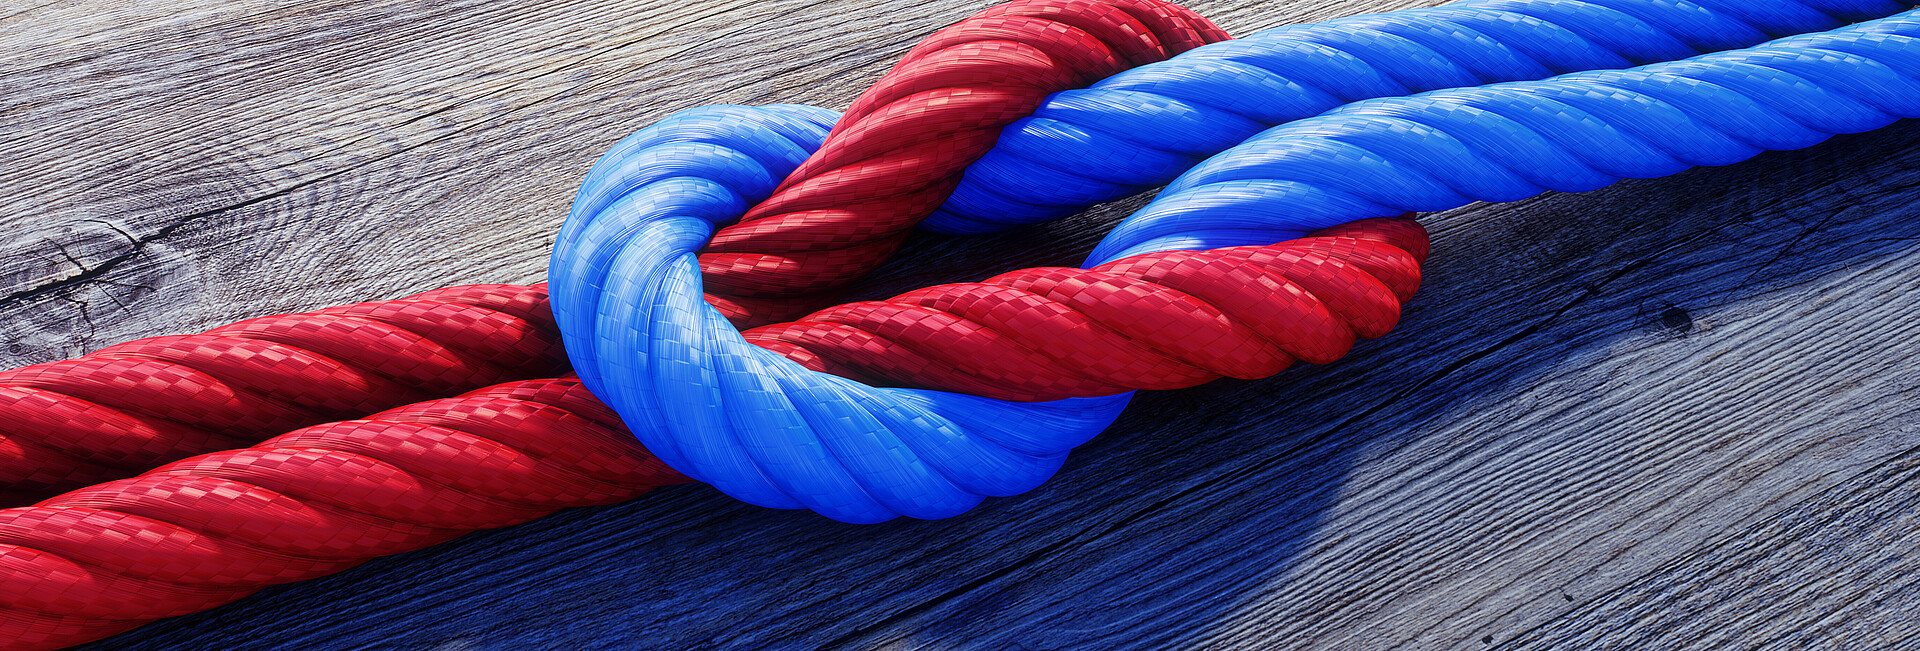 Kreuzknoten mit rotem und blauem Seil auf Holz 